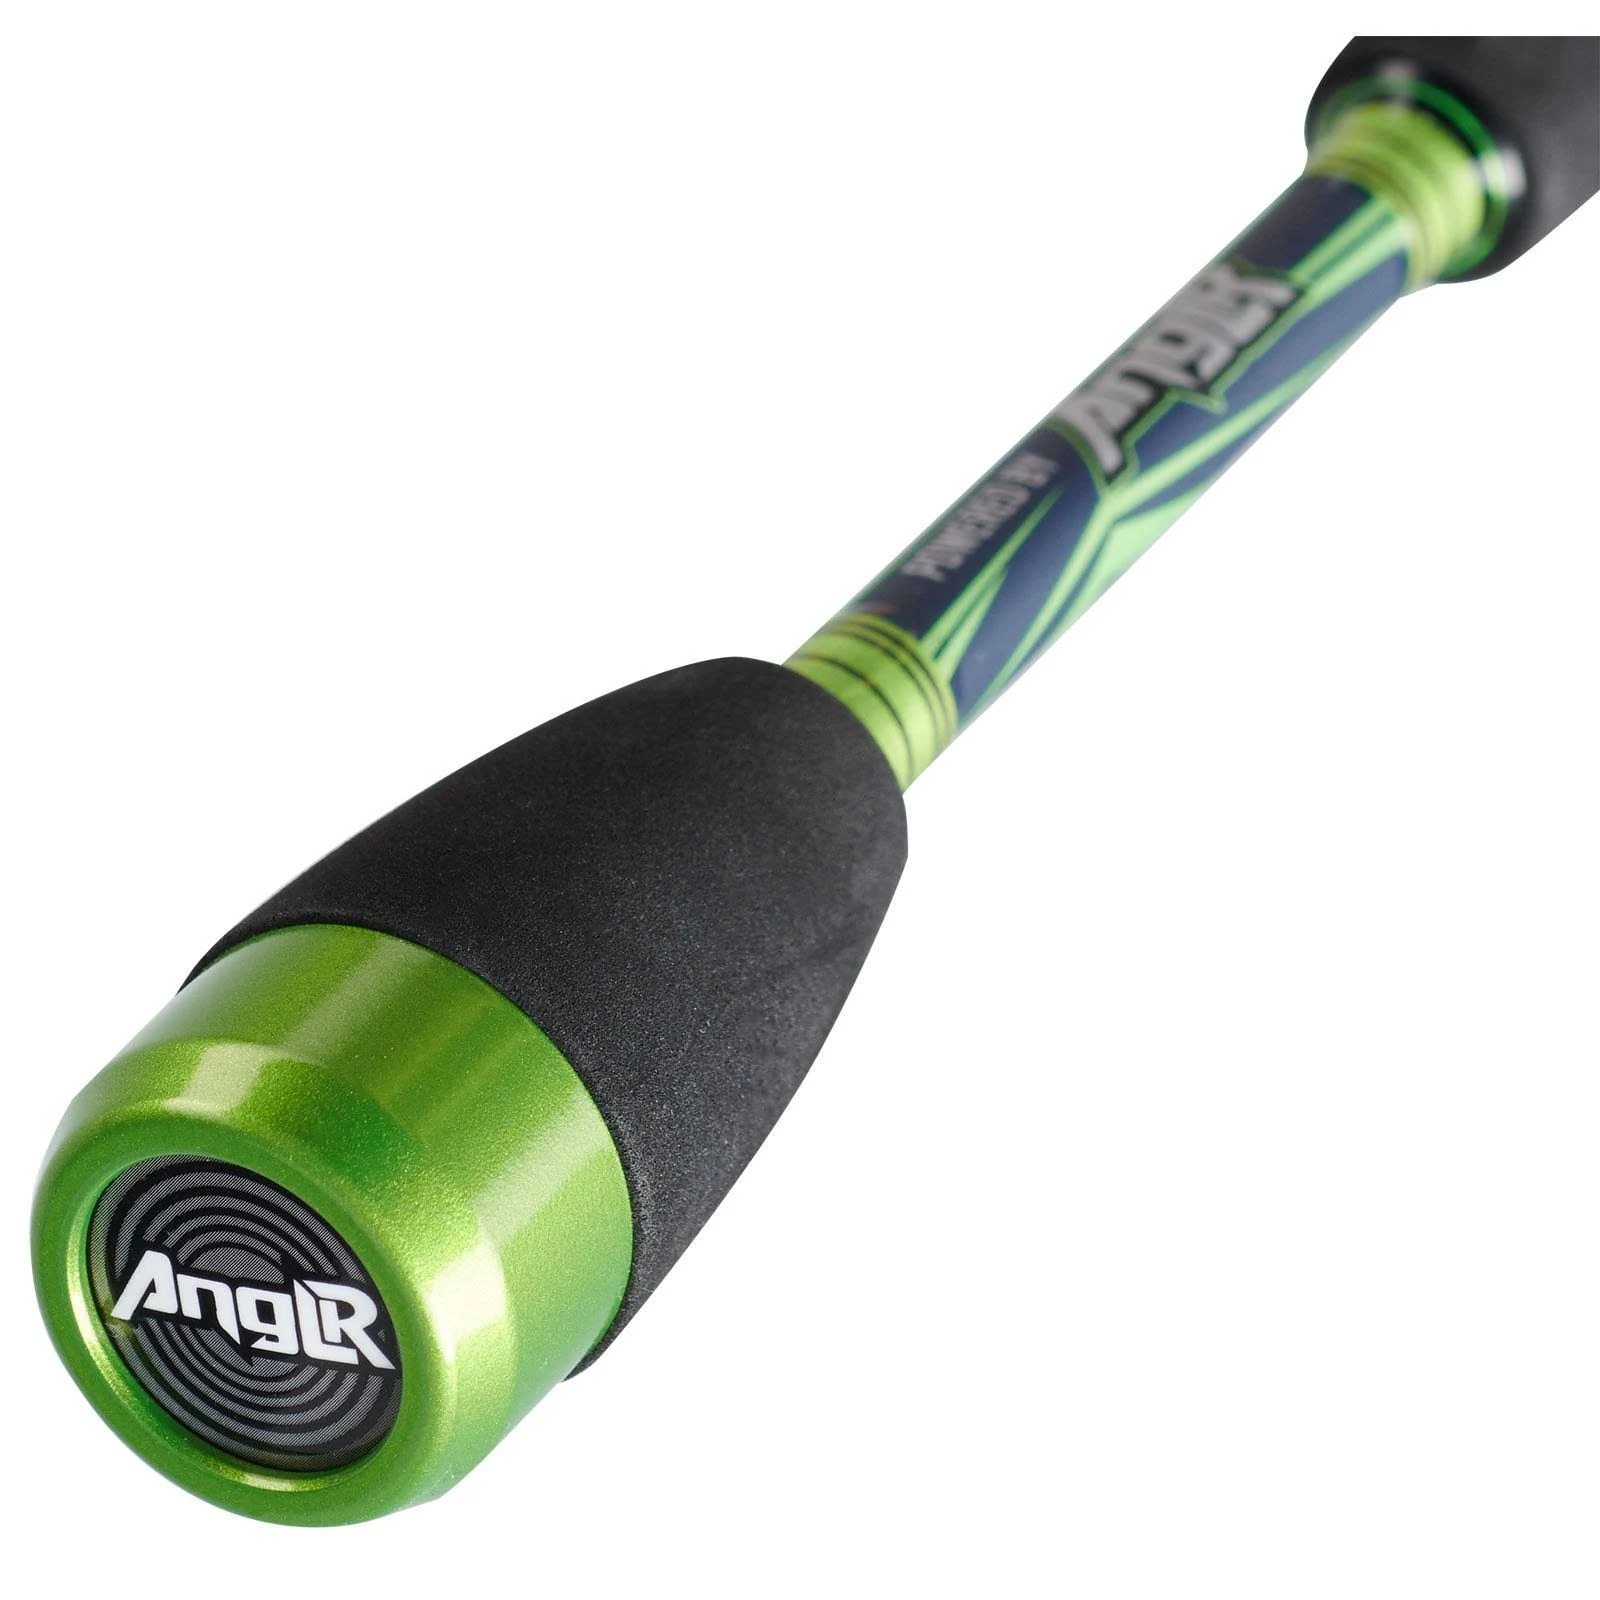 Abu Garcia Virtual Bluetooth Capable Casting Fishing Rod ‎7' - Medium Heavy - 1pc $49.96